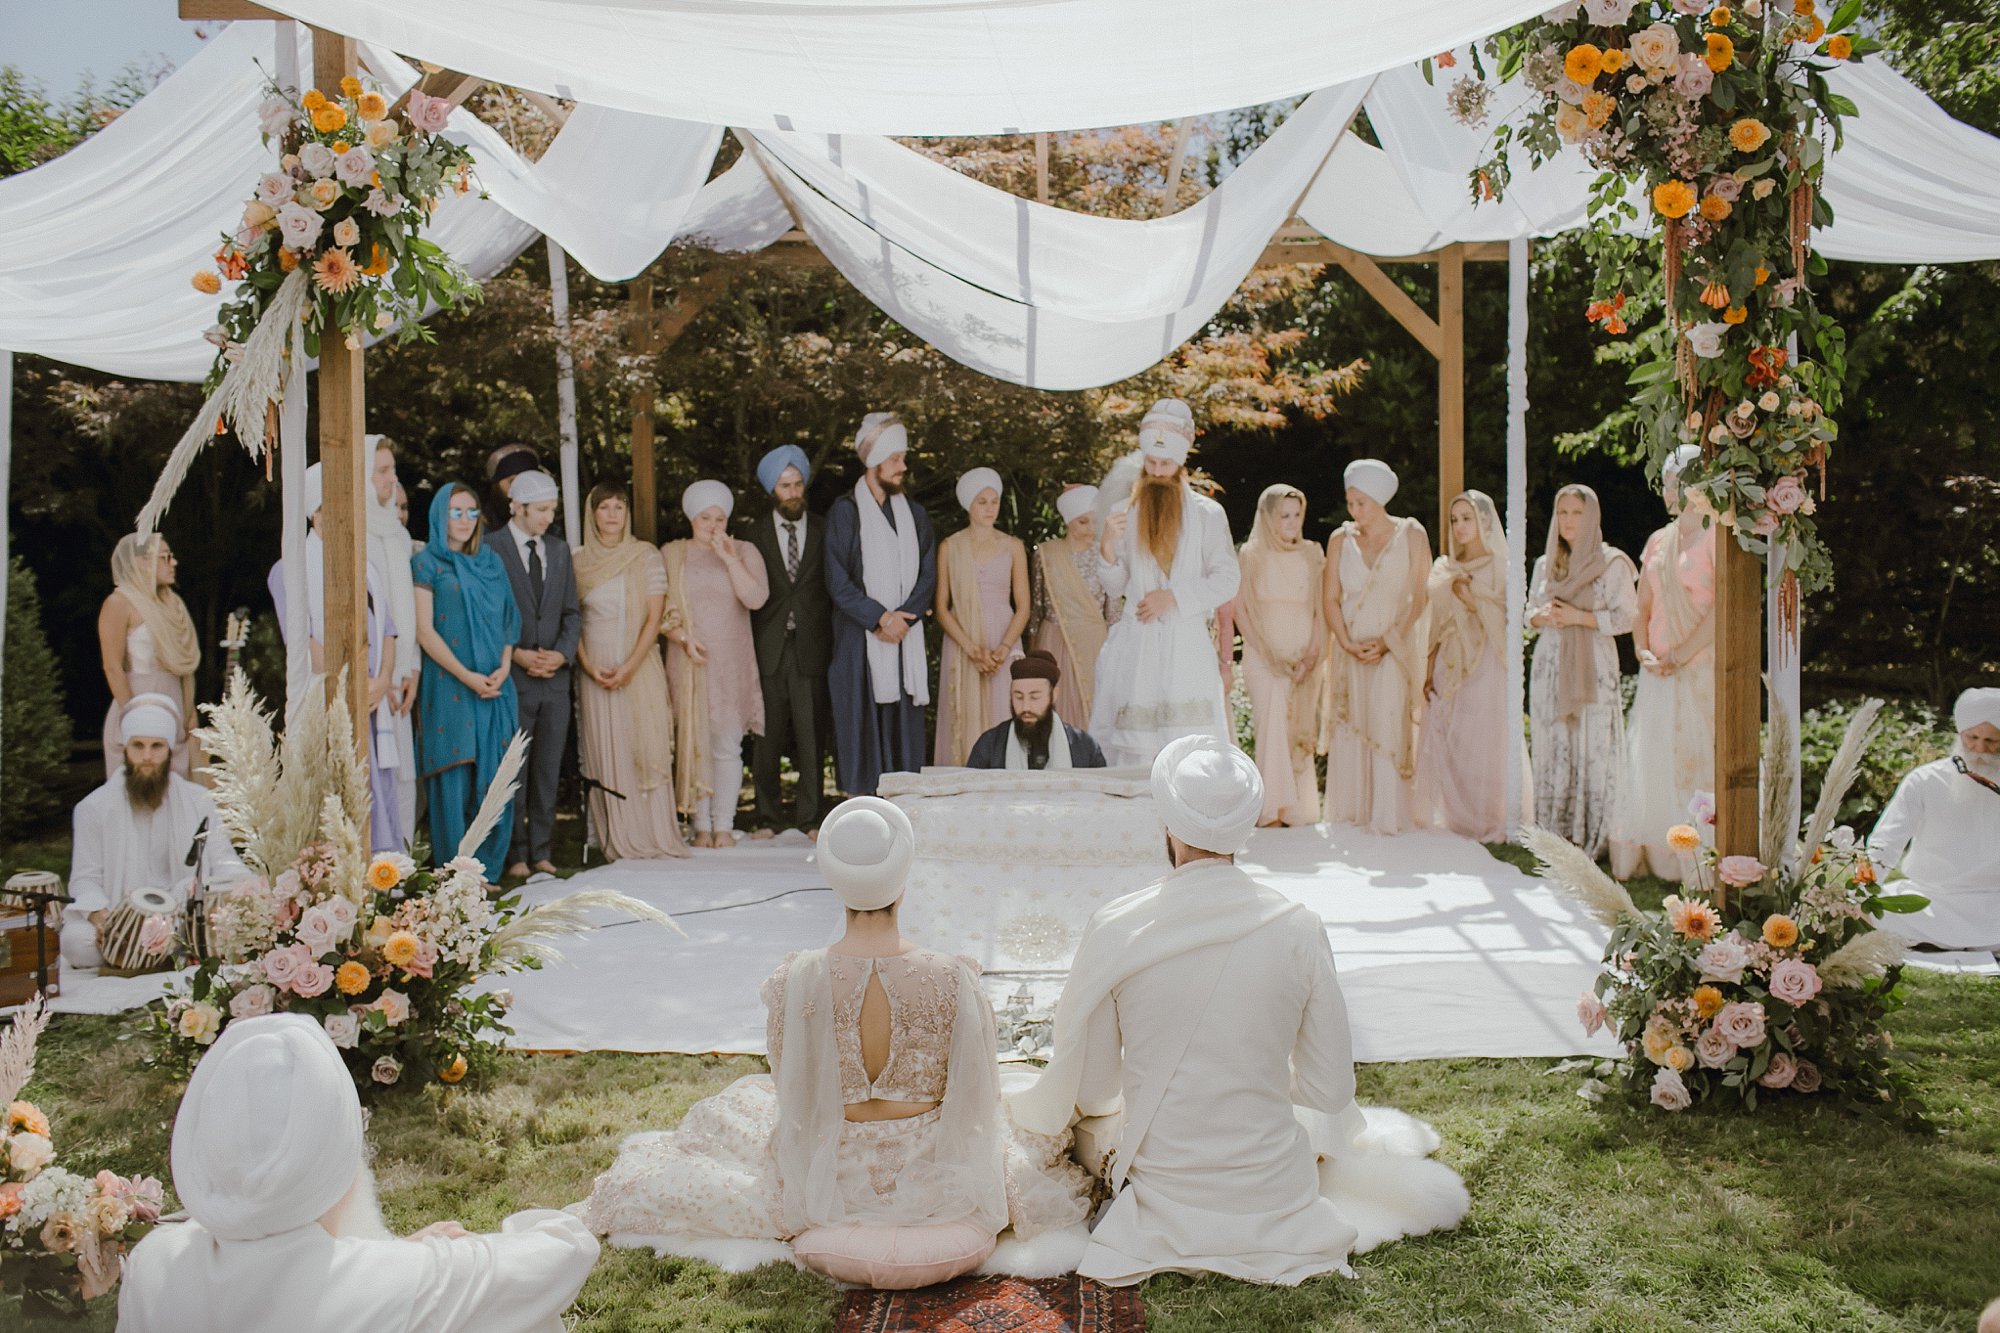 A Sikh wedding in Oregon